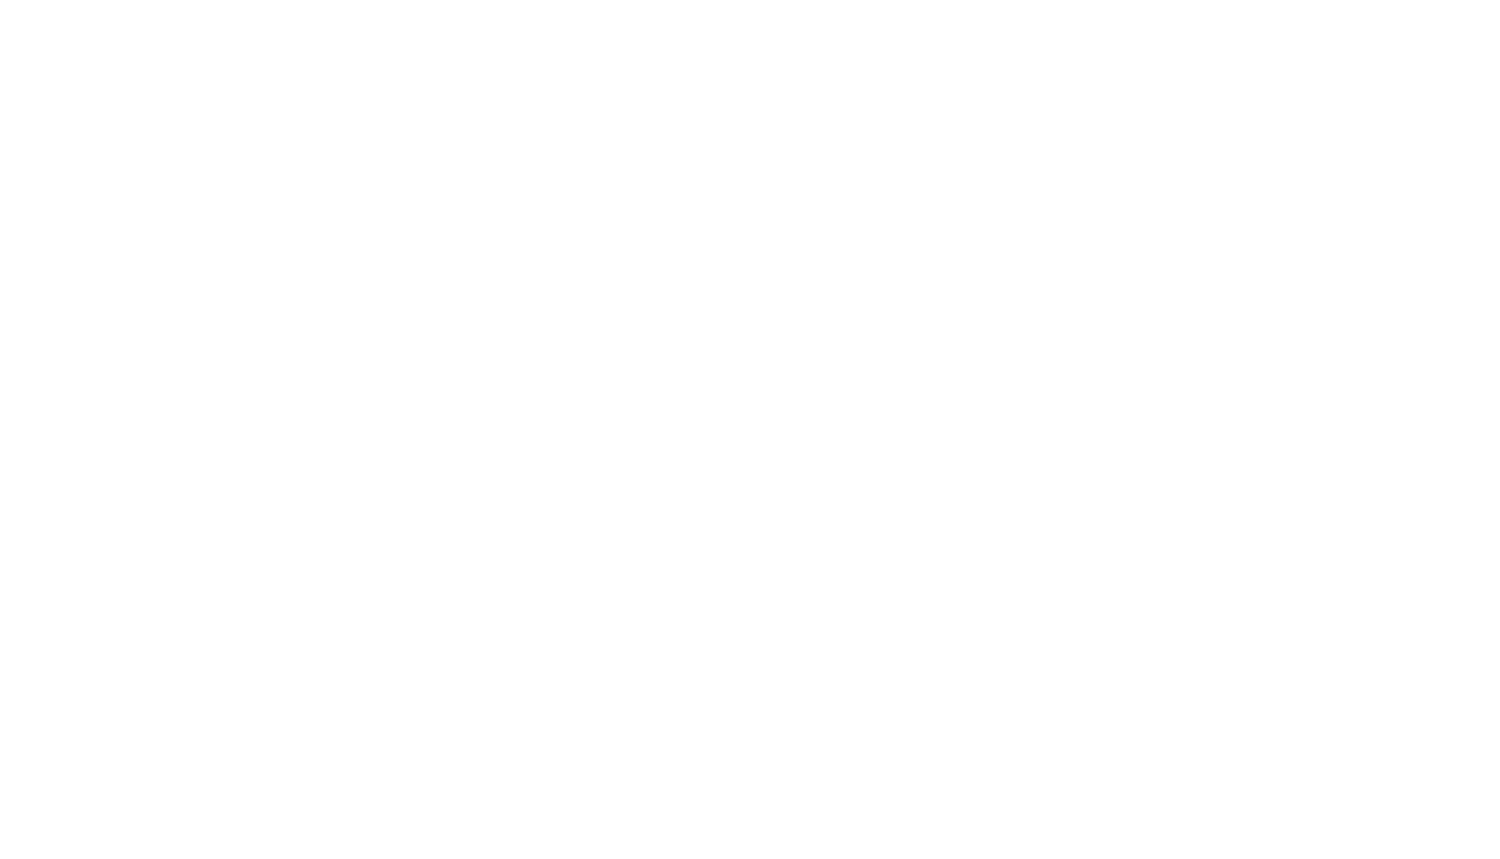 Noah Bruce, PsyD                                           Licensed Psychologist